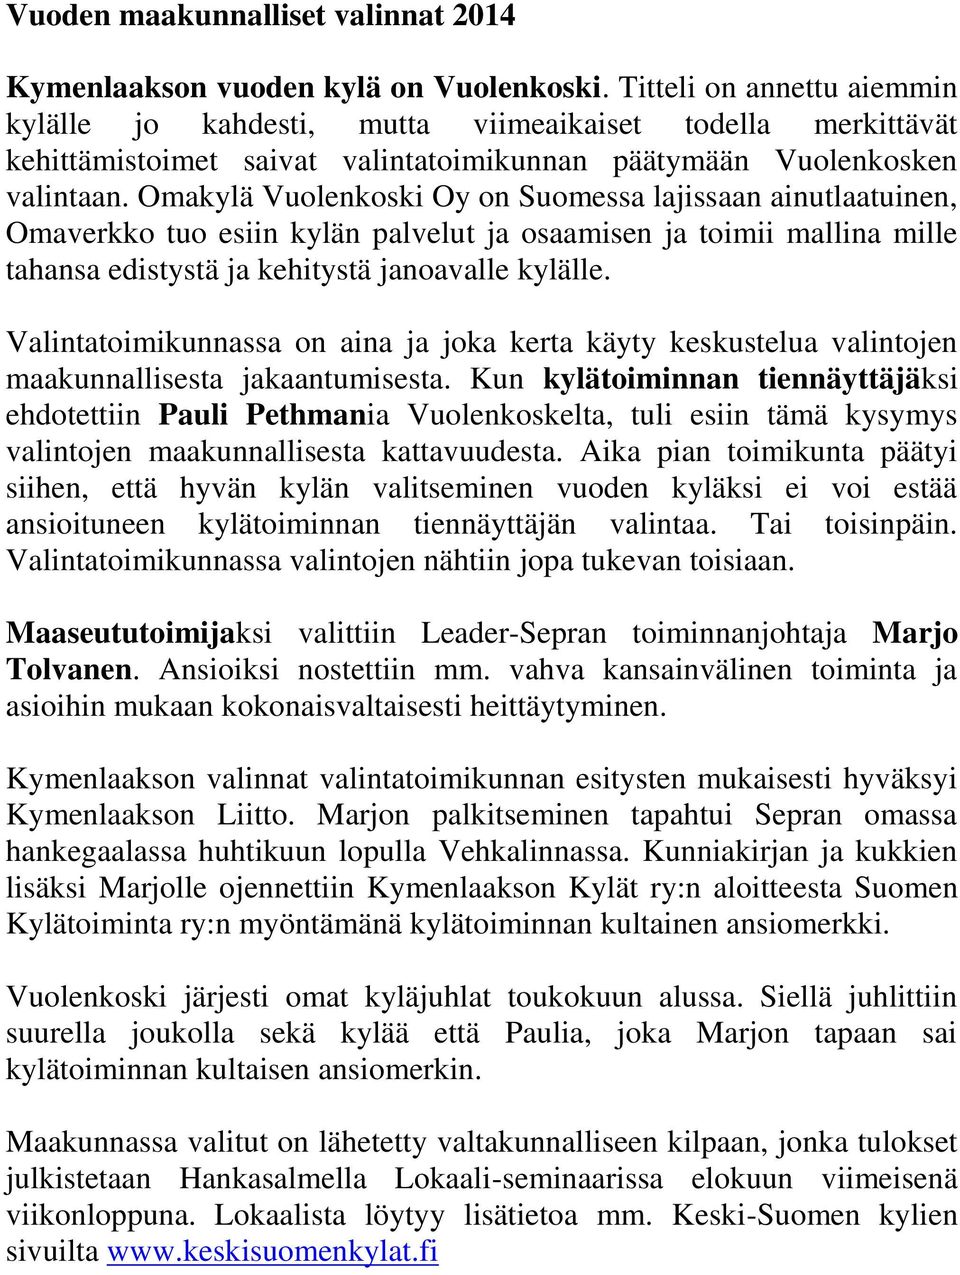 Omakylä Vuolenkoski Oy on Suomessa lajissaan ainutlaatuinen, Omaverkko tuo esiin kylän palvelut ja osaamisen ja toimii mallina mille tahansa edistystä ja kehitystä janoavalle kylälle.